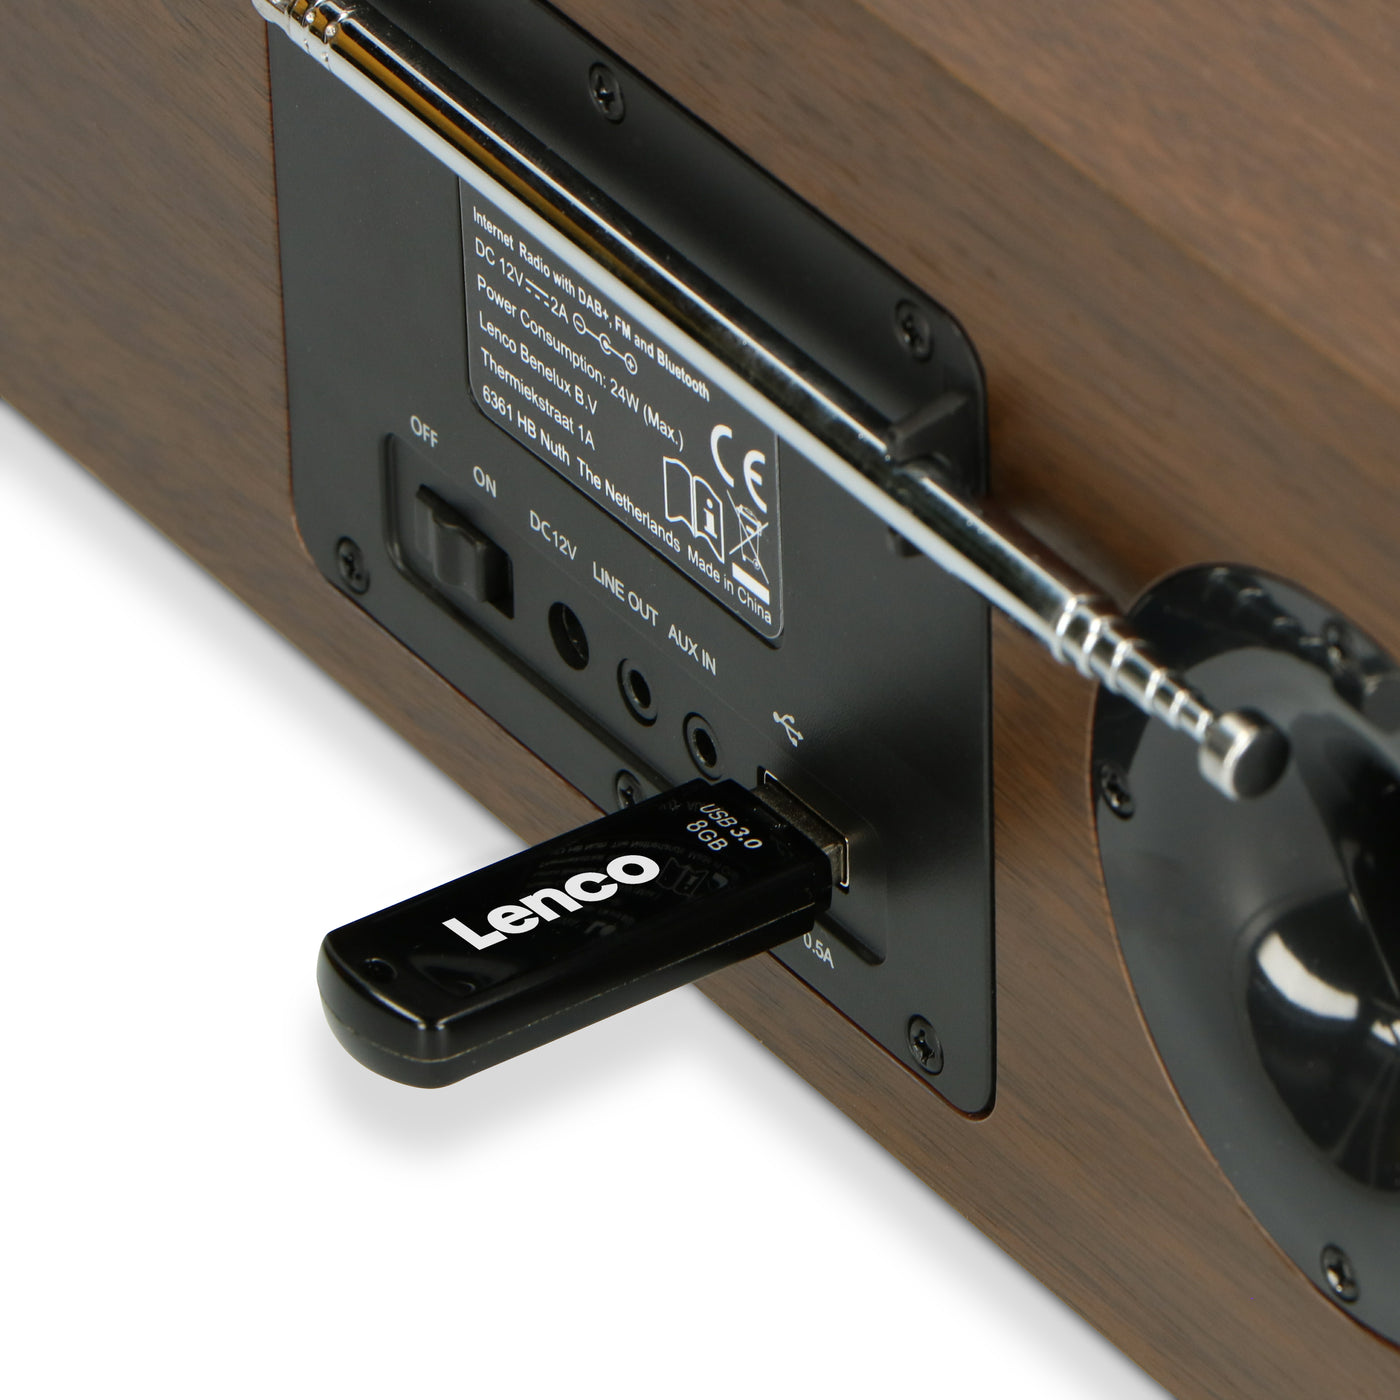 LENCO DIR-170WA Inteligentne radio internetowe z DAB+, FM i Bluetooth® - Drewno